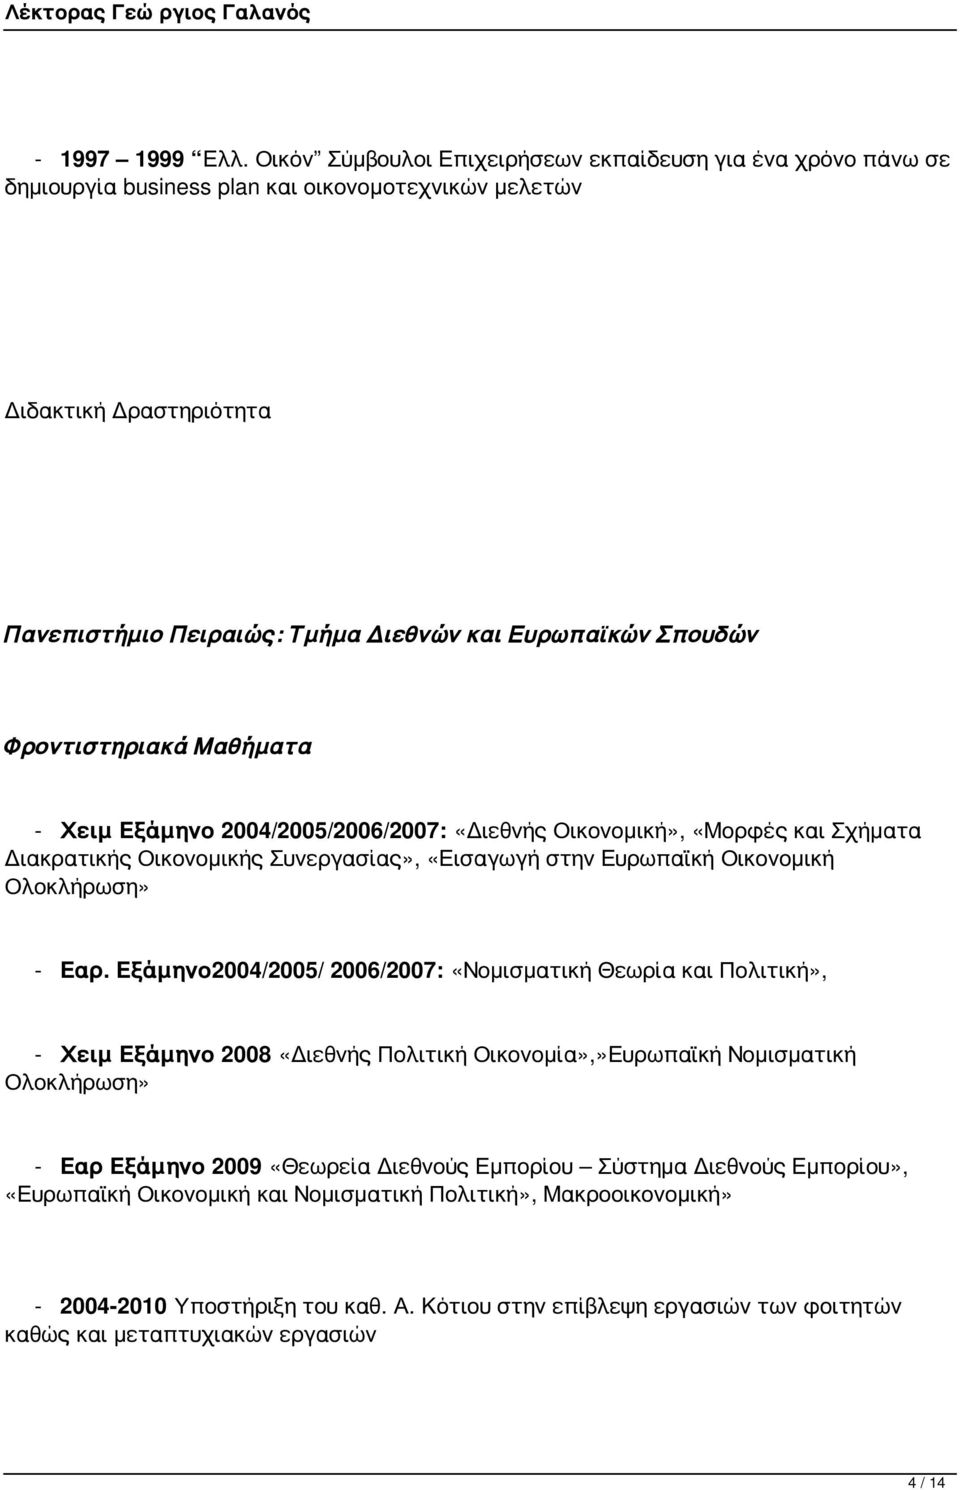 Φροντιστηριακά Μαθήματα - Χειμ Εξάμηνο 2004/2005/2006/2007: «Διεθνής Οικονομική», «Μορφές και Σχήματα Διακρατικής Οικονομικής Συνεργασίας», «Εισαγωγή στην Ευρωπαϊκή Οικονομική Ολοκλήρωση» - Εαρ.